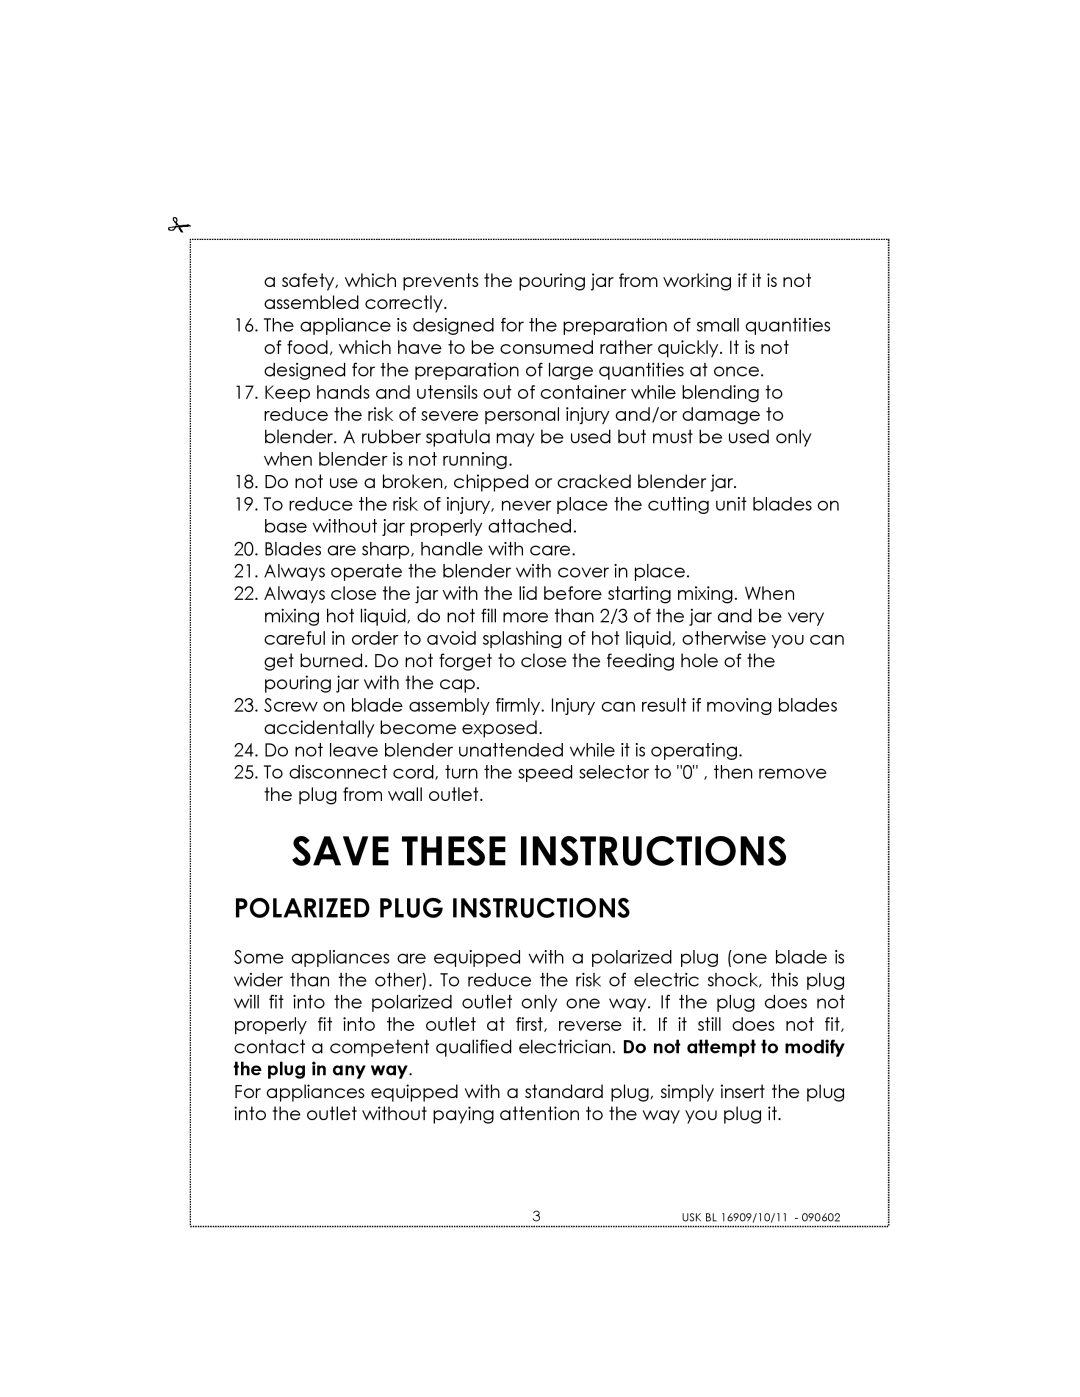 Kalorik USK BL 16910 manual Save These Instructions, Polarized Plug Instructions 